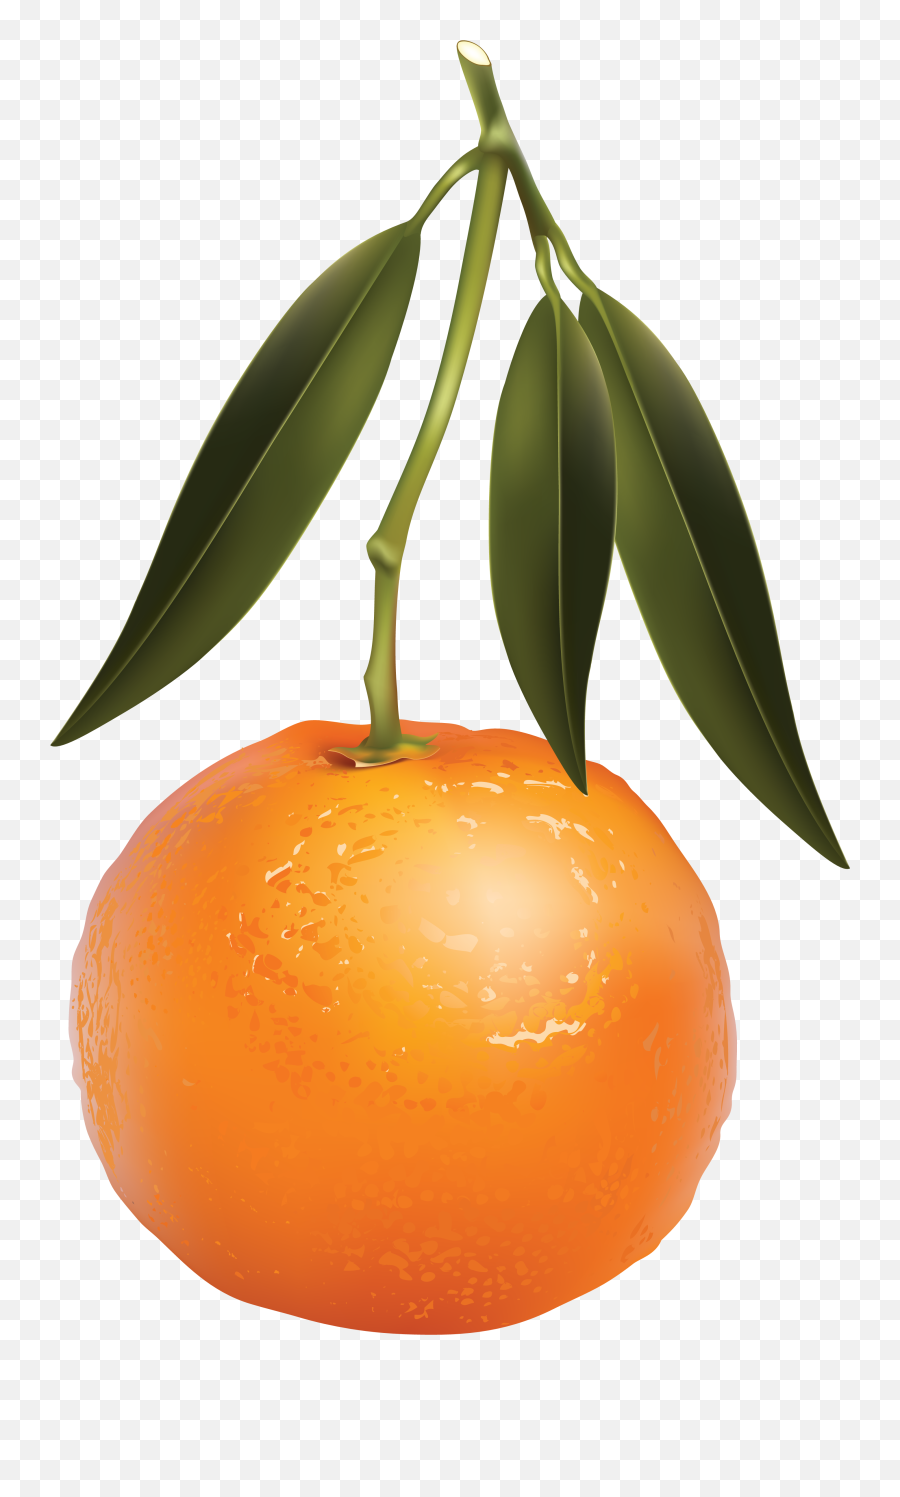 Mandarin Png Images Free Download - Mandarin Orange,Orange Tree Png